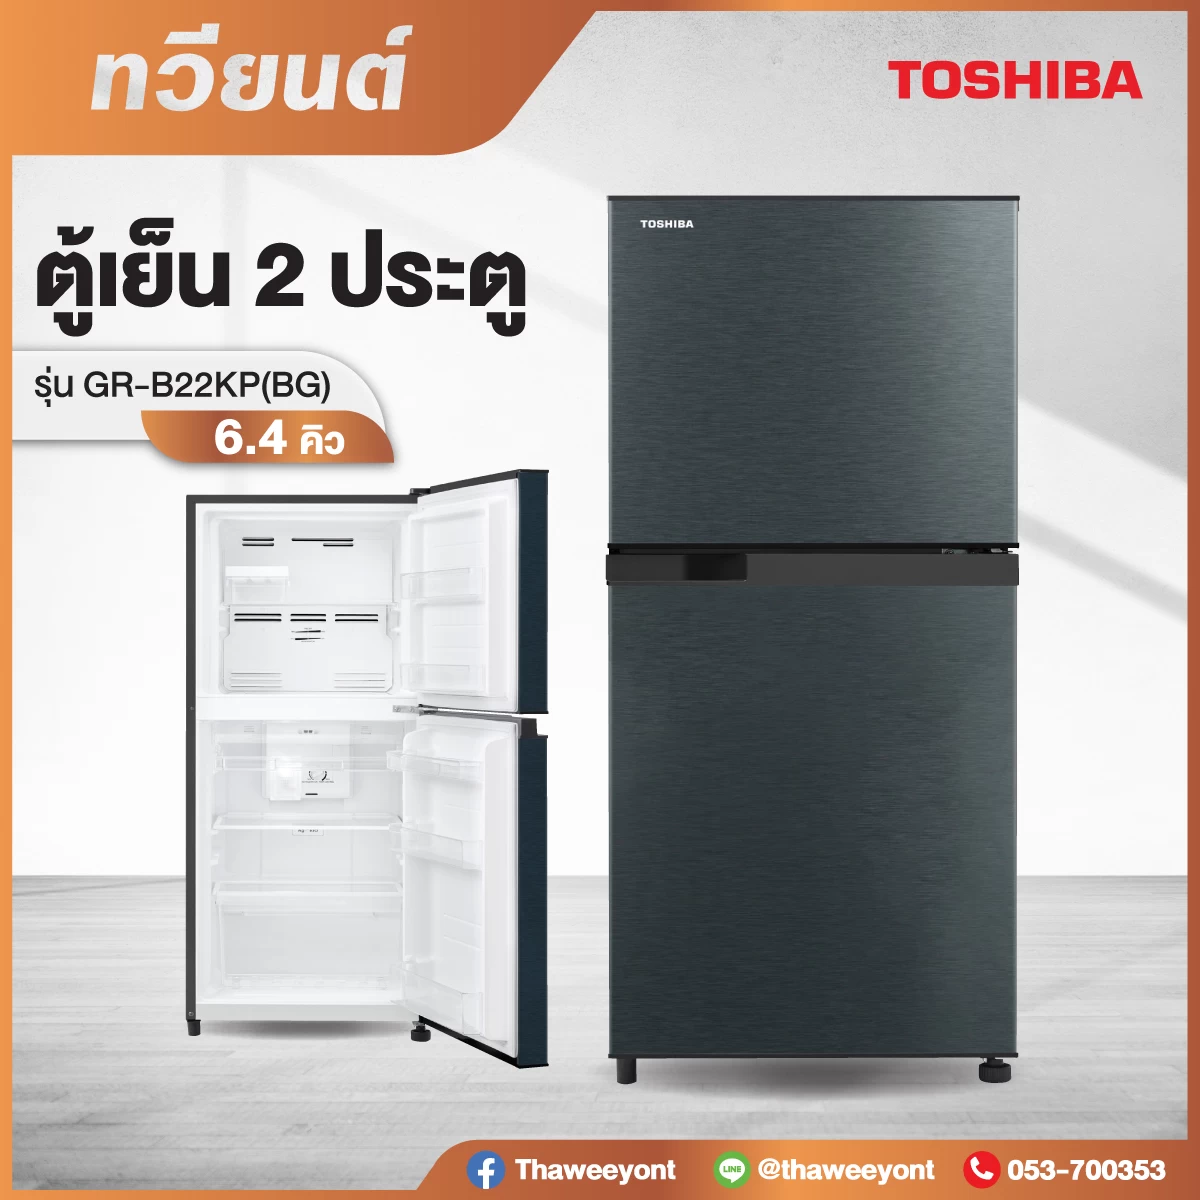 ตู้เย็น TOSHIBA รุ่น GR-B22KP(BG) 6.4 คิว (สีเทาดำ)